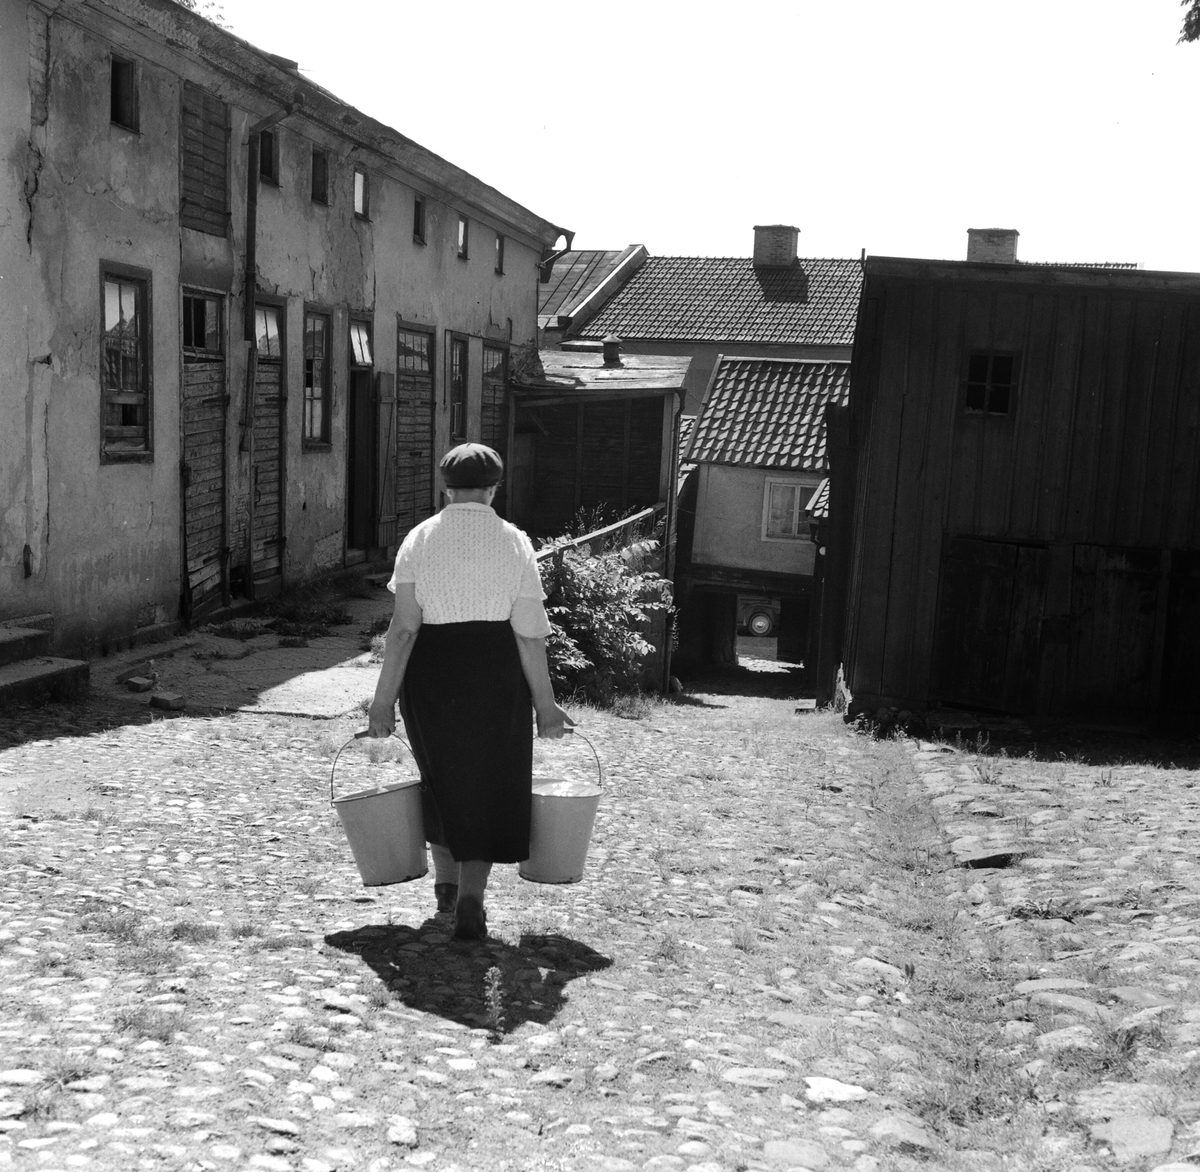 Kvinna som har hämtat vatten i hinkar på en bakgård i Sankt Korskvarteret i Linköping, 1953.
Pressfotografier från 1950-1960-talet. Samtliga bilder är tagna i Östergötland, de flesta i Linköping.